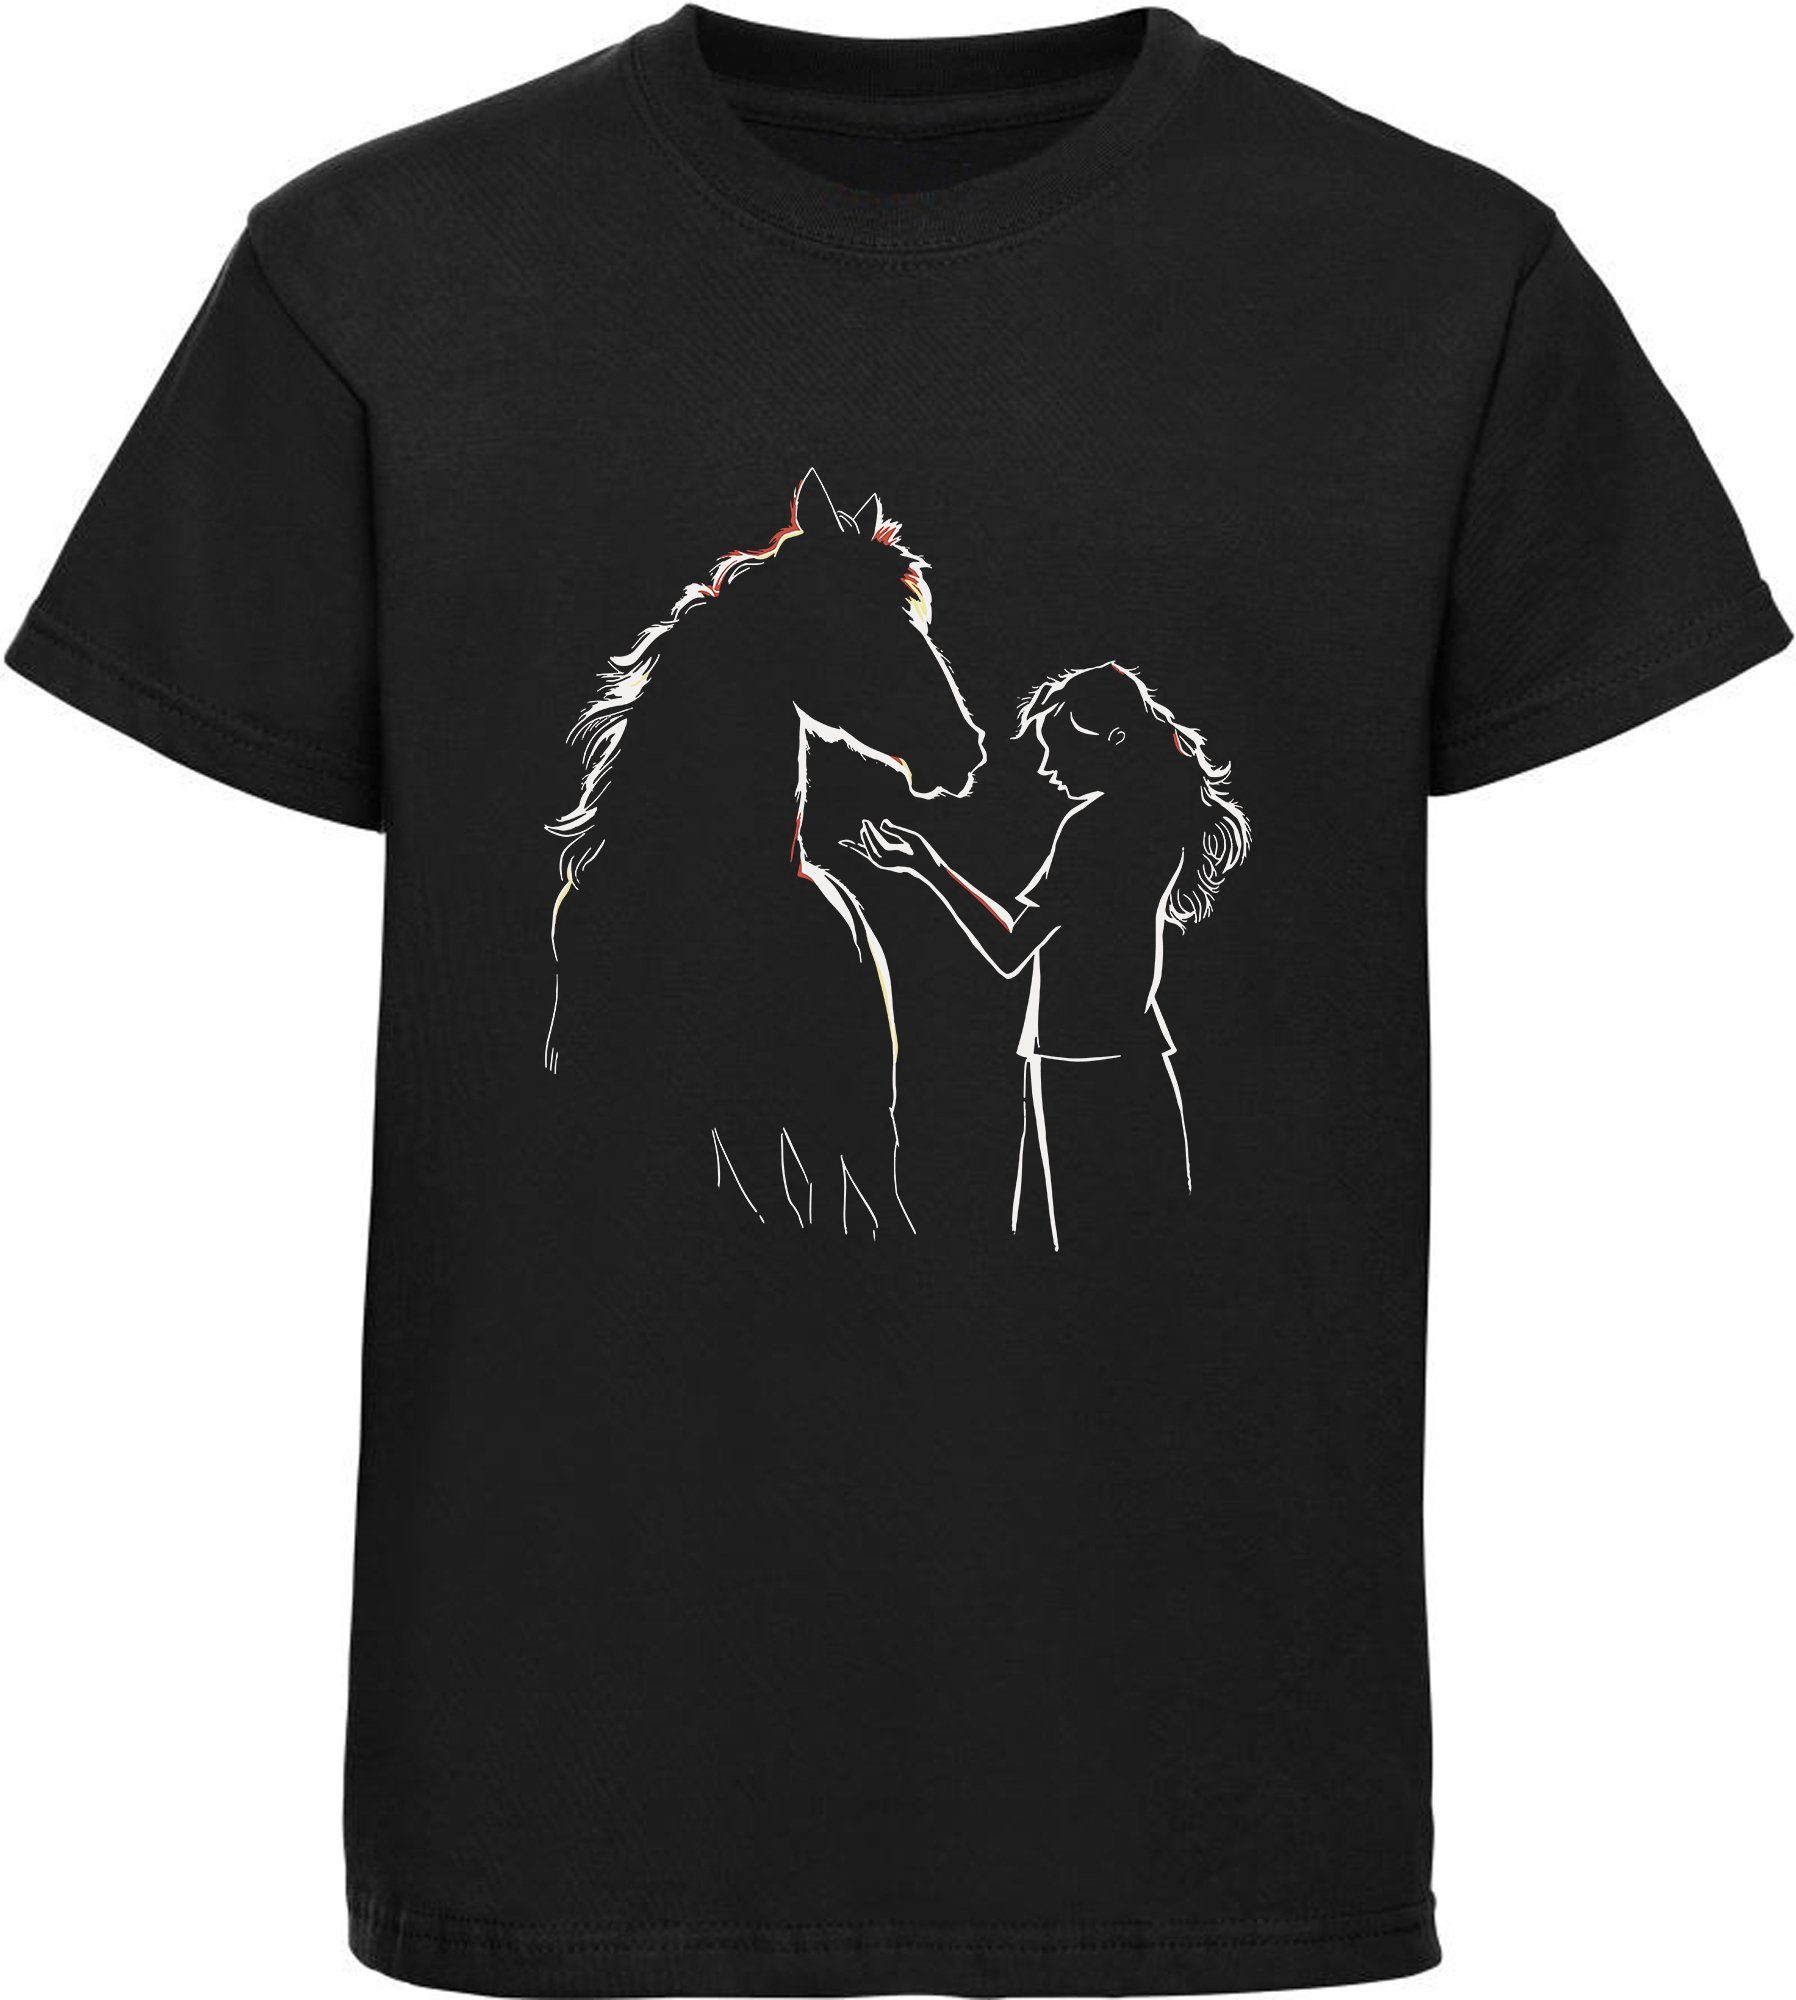 MyDesign24 Print-Shirt mit T-Shirt Aufdruck, Silhouette Baumwollshirt Mädchen Frau schwarz mit bedrucktes Pferde i139